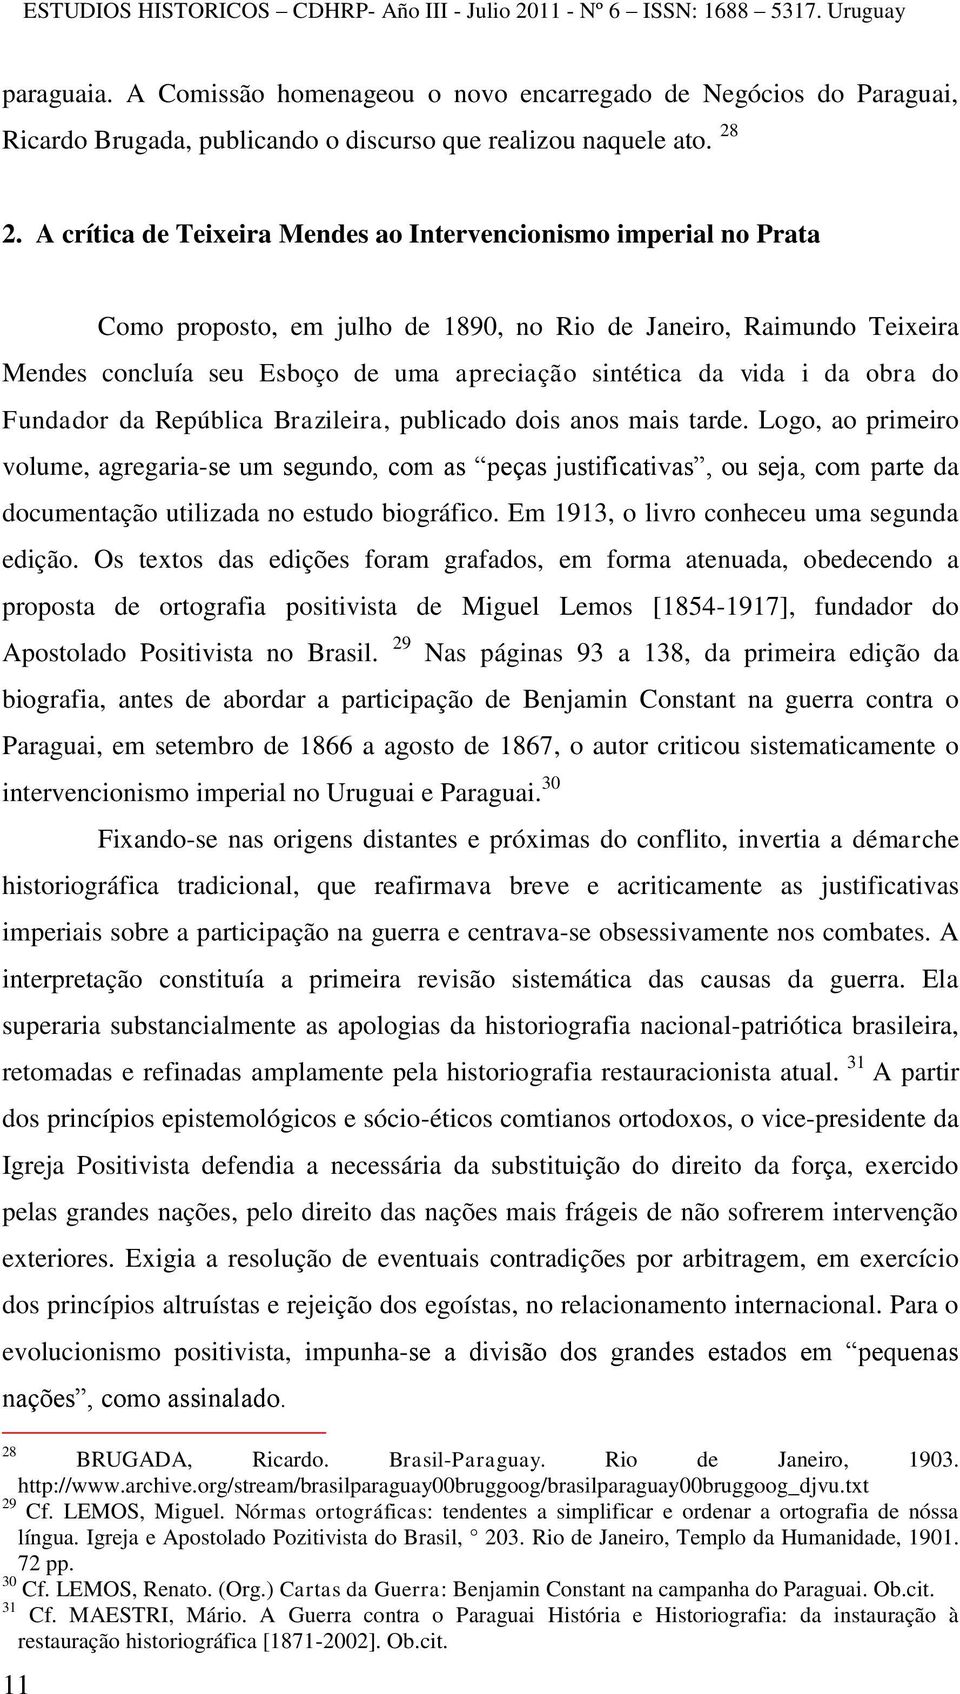 vida i da obra do Fundador da República Brazileira, publicado dois anos mais tarde.